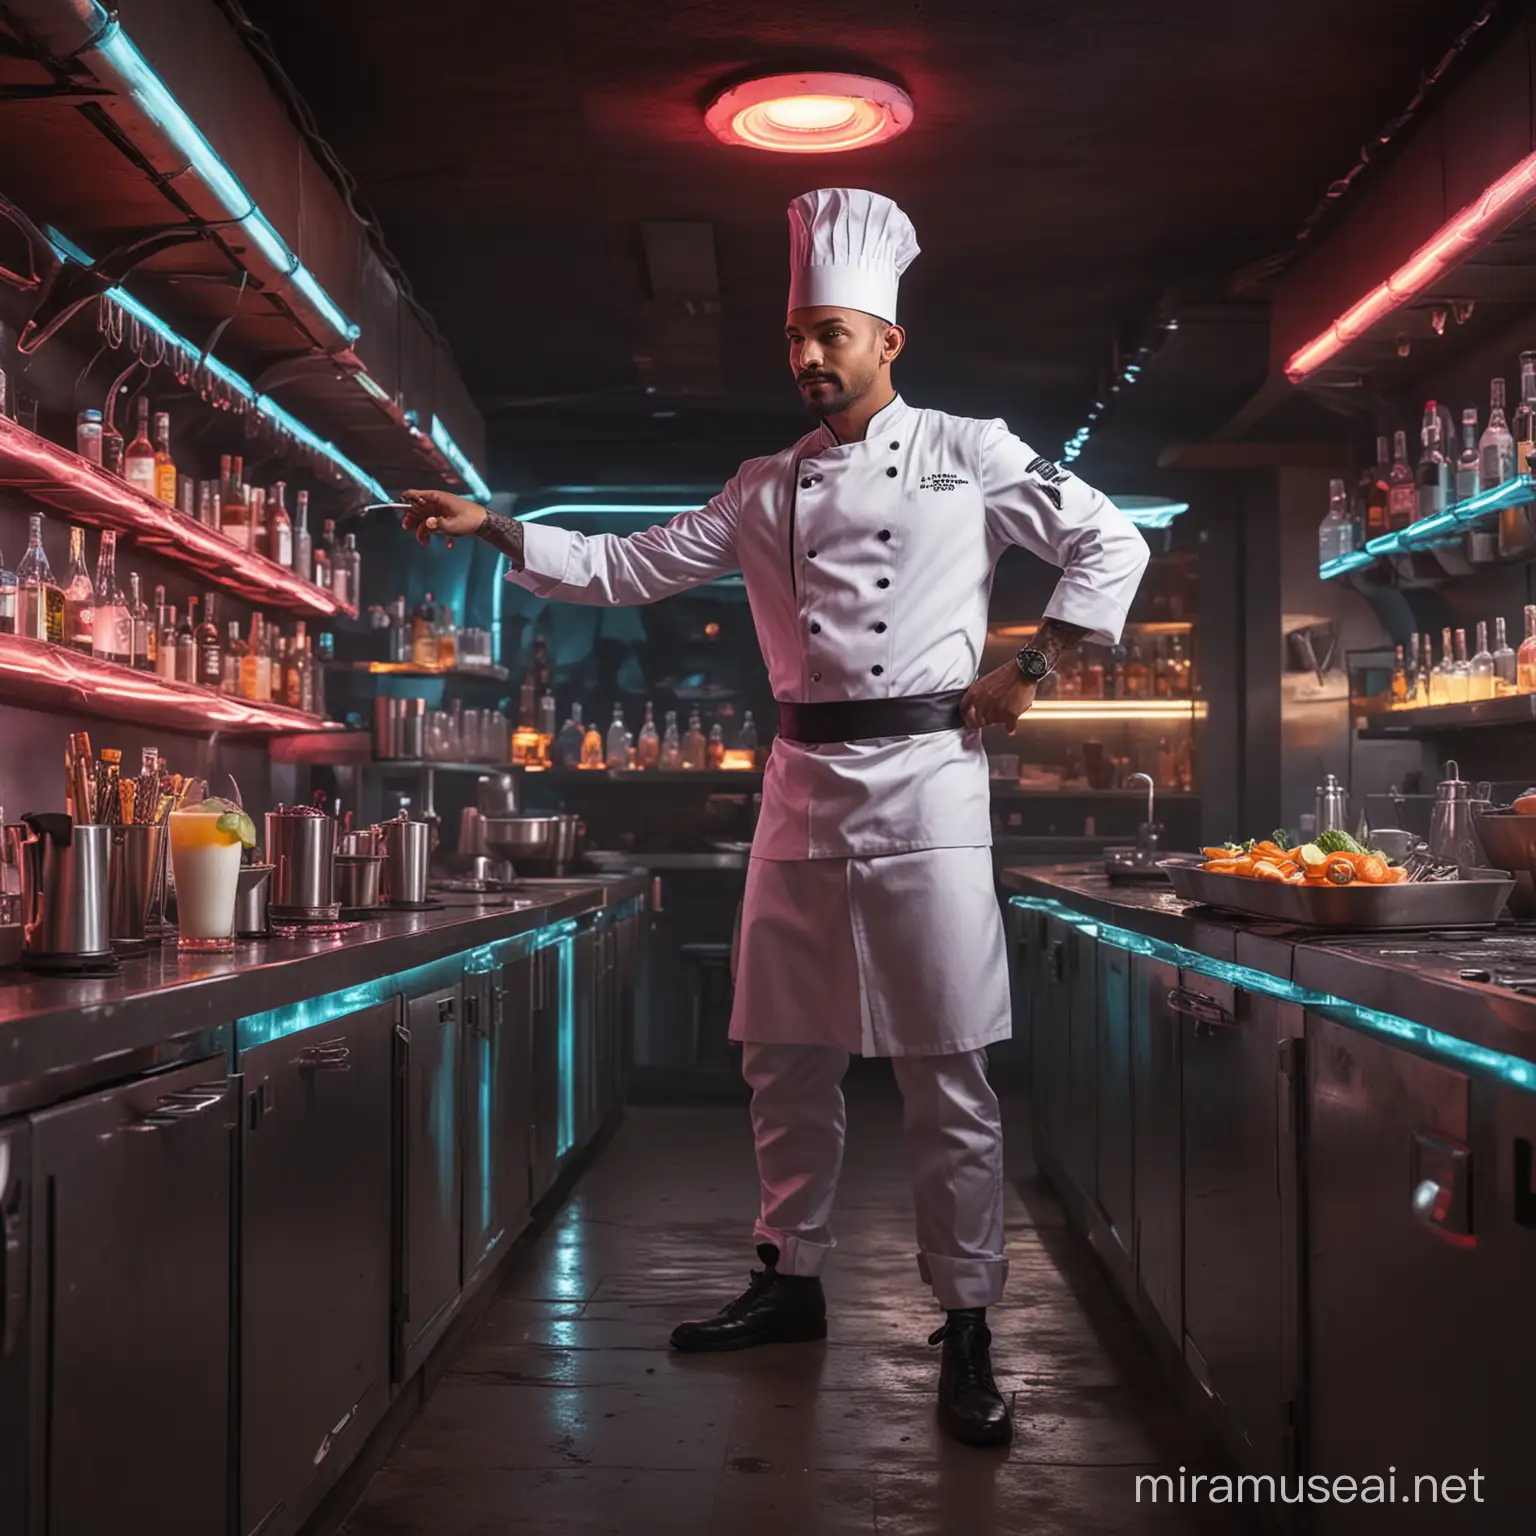 Futuristic Goa Chef Mixing Cocktails in Neon Attire